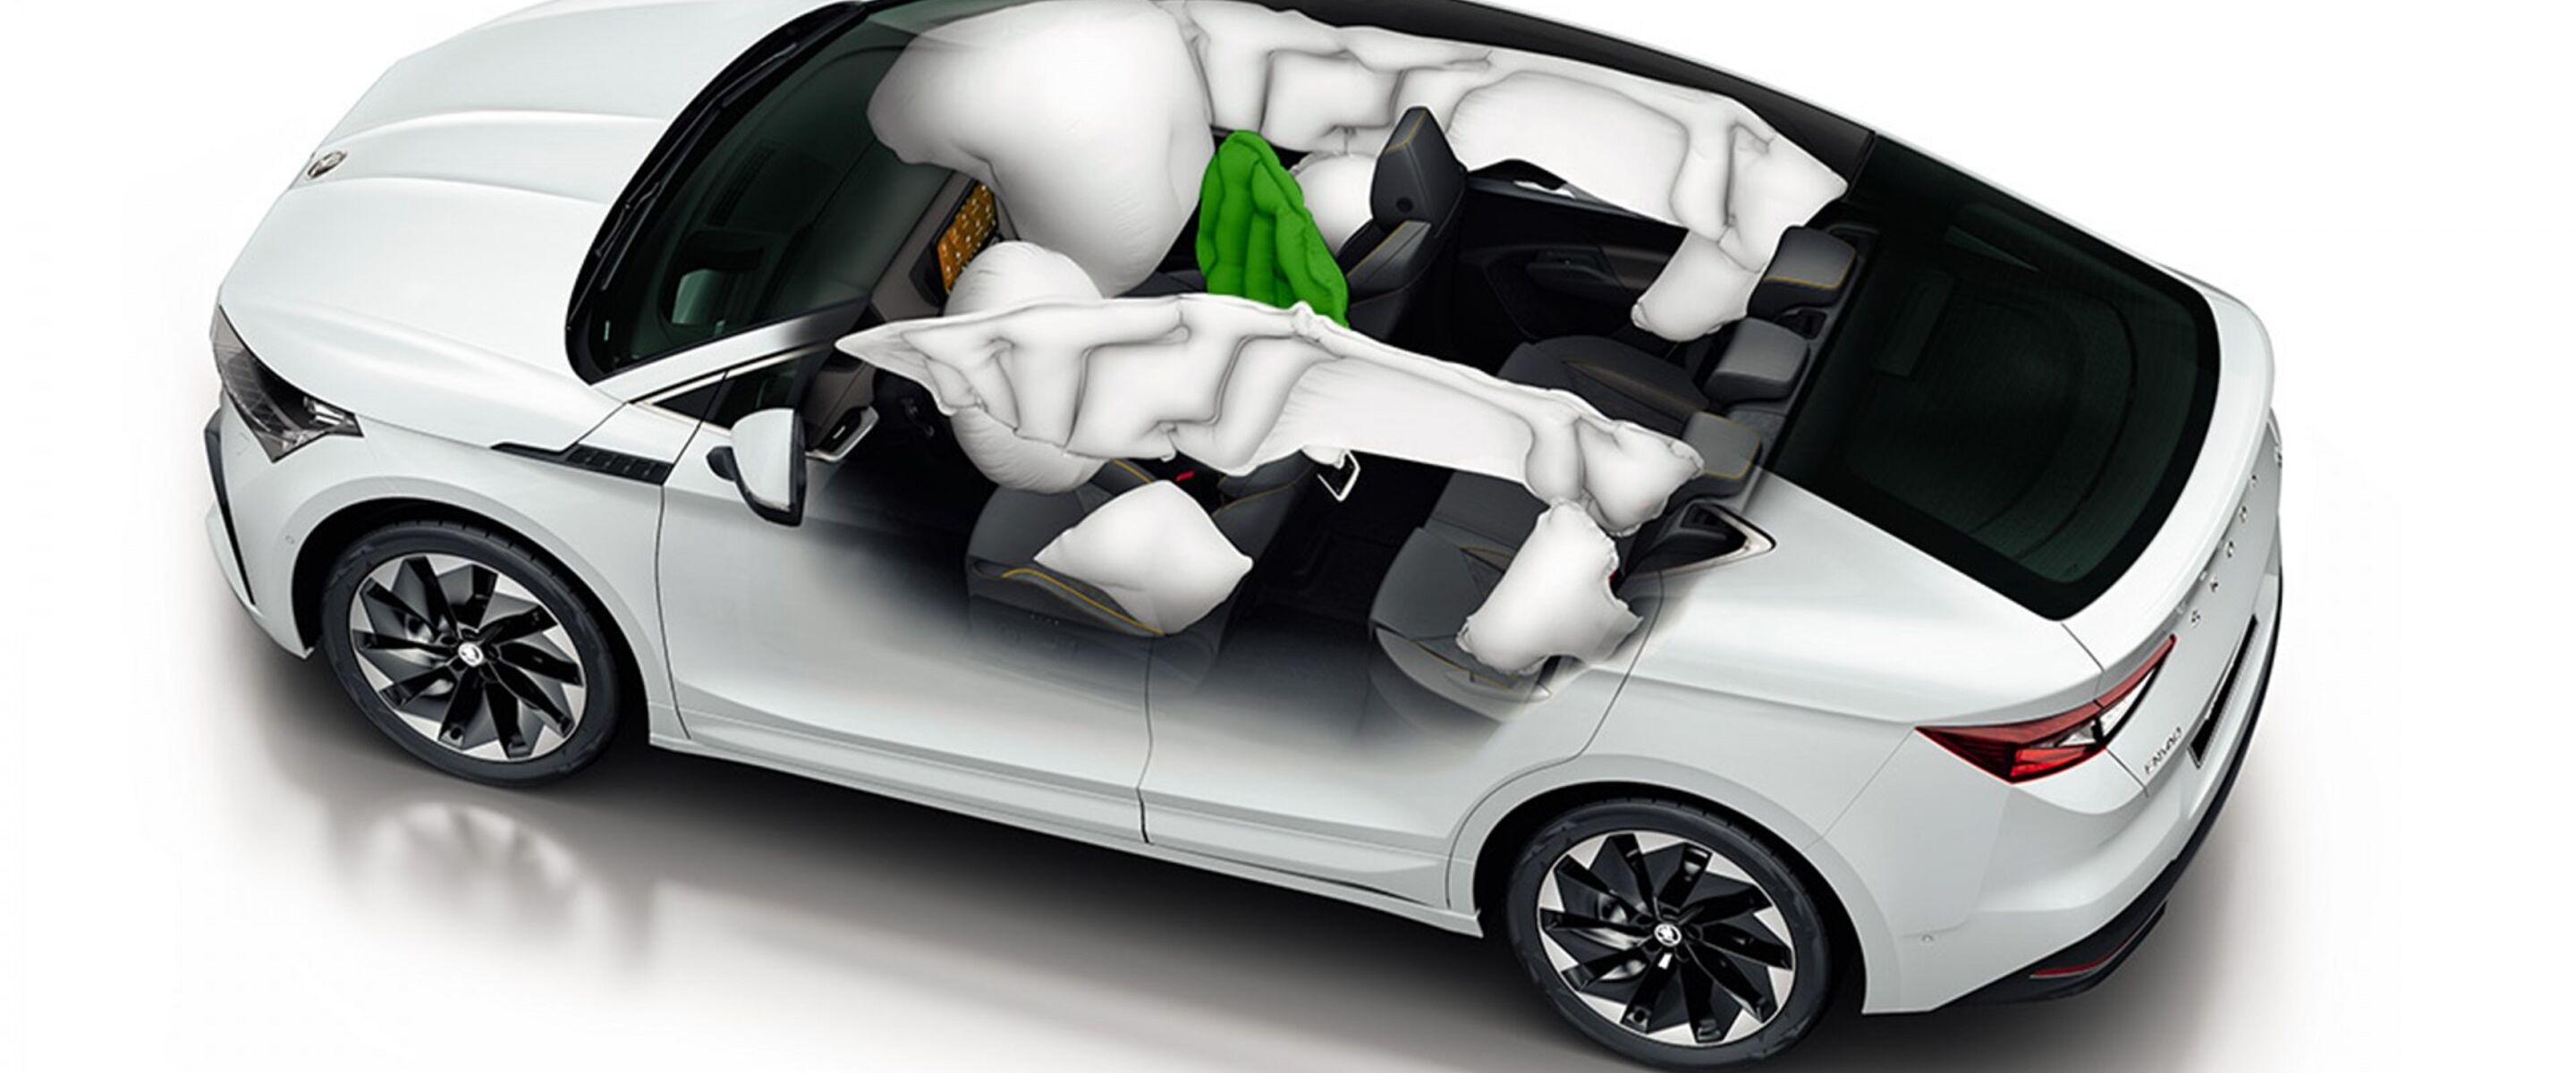 Dit is hoe de centrale airbag van Škoda u en uw passagier beschermt